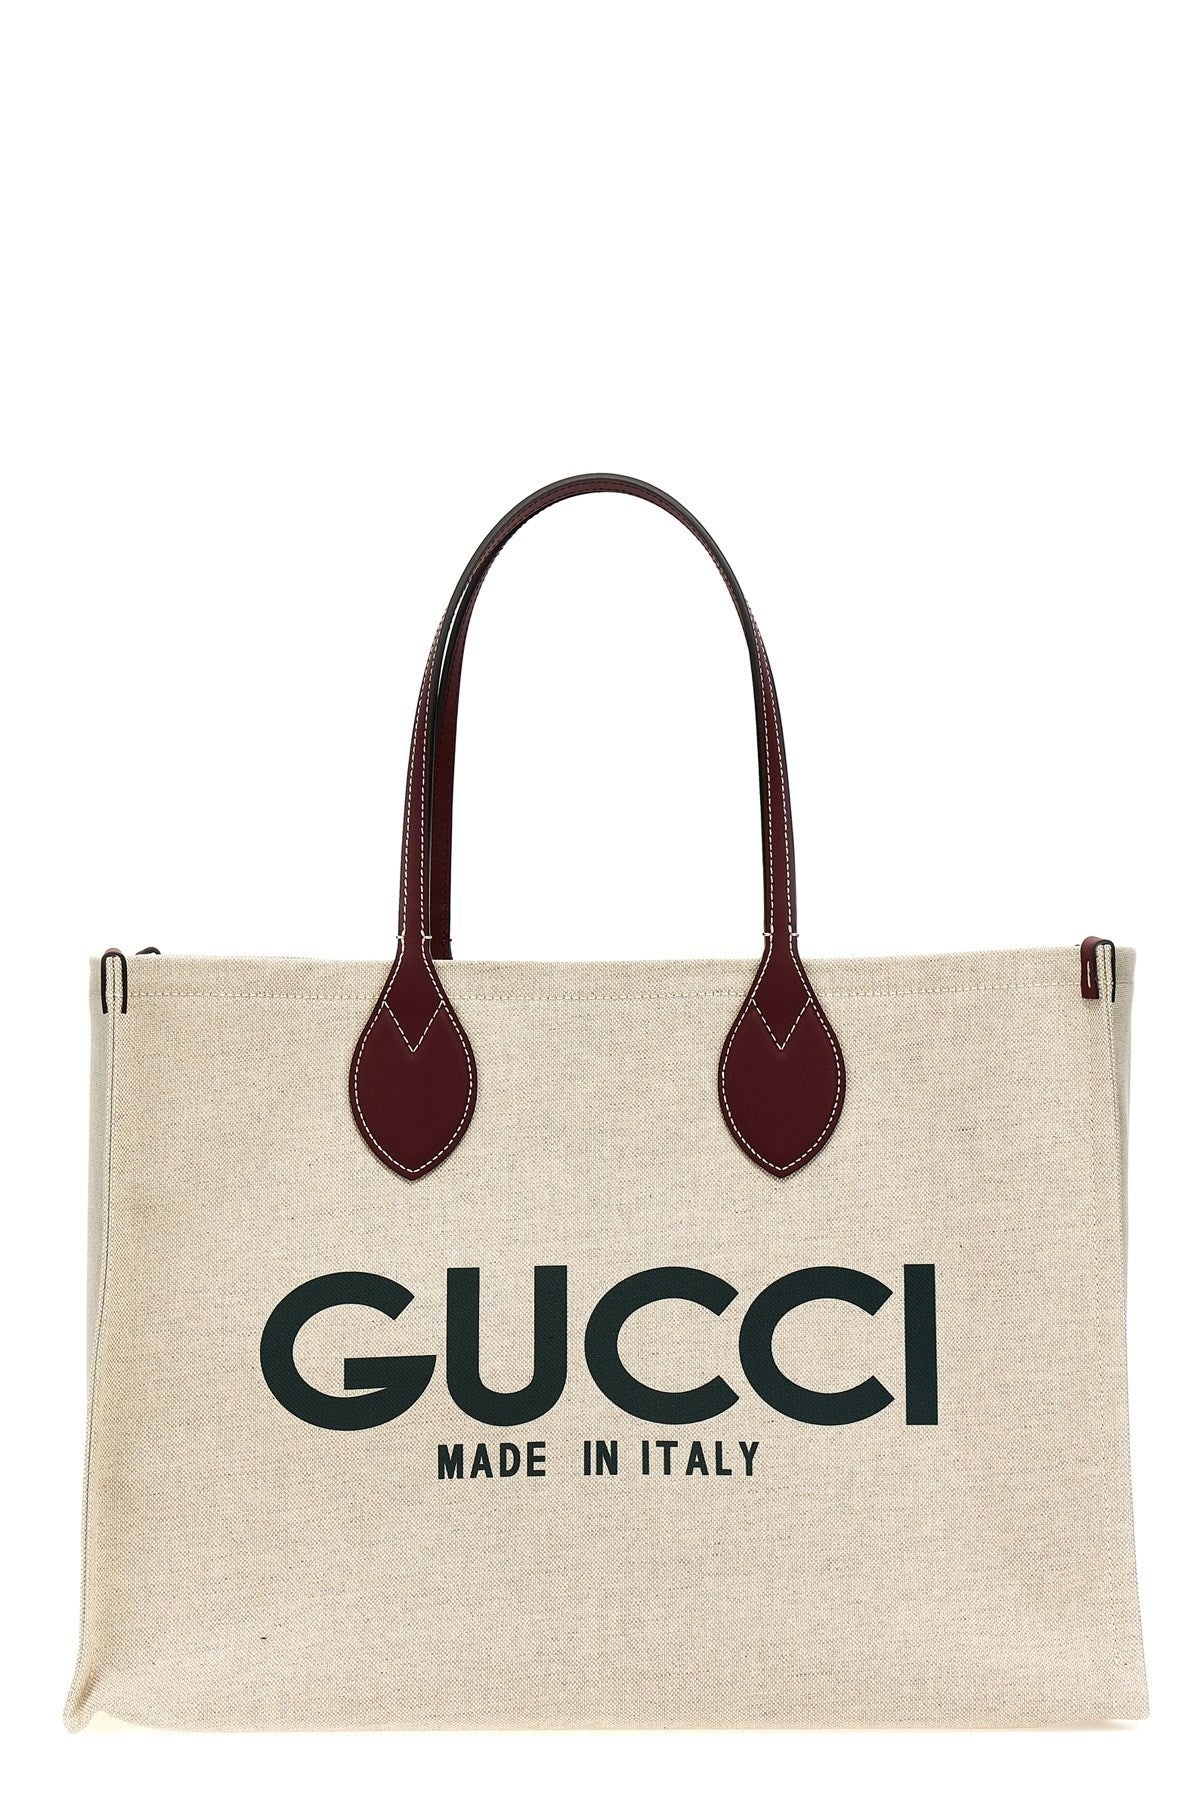 Gucci Women 'Gucci' Shopping Bag - 1